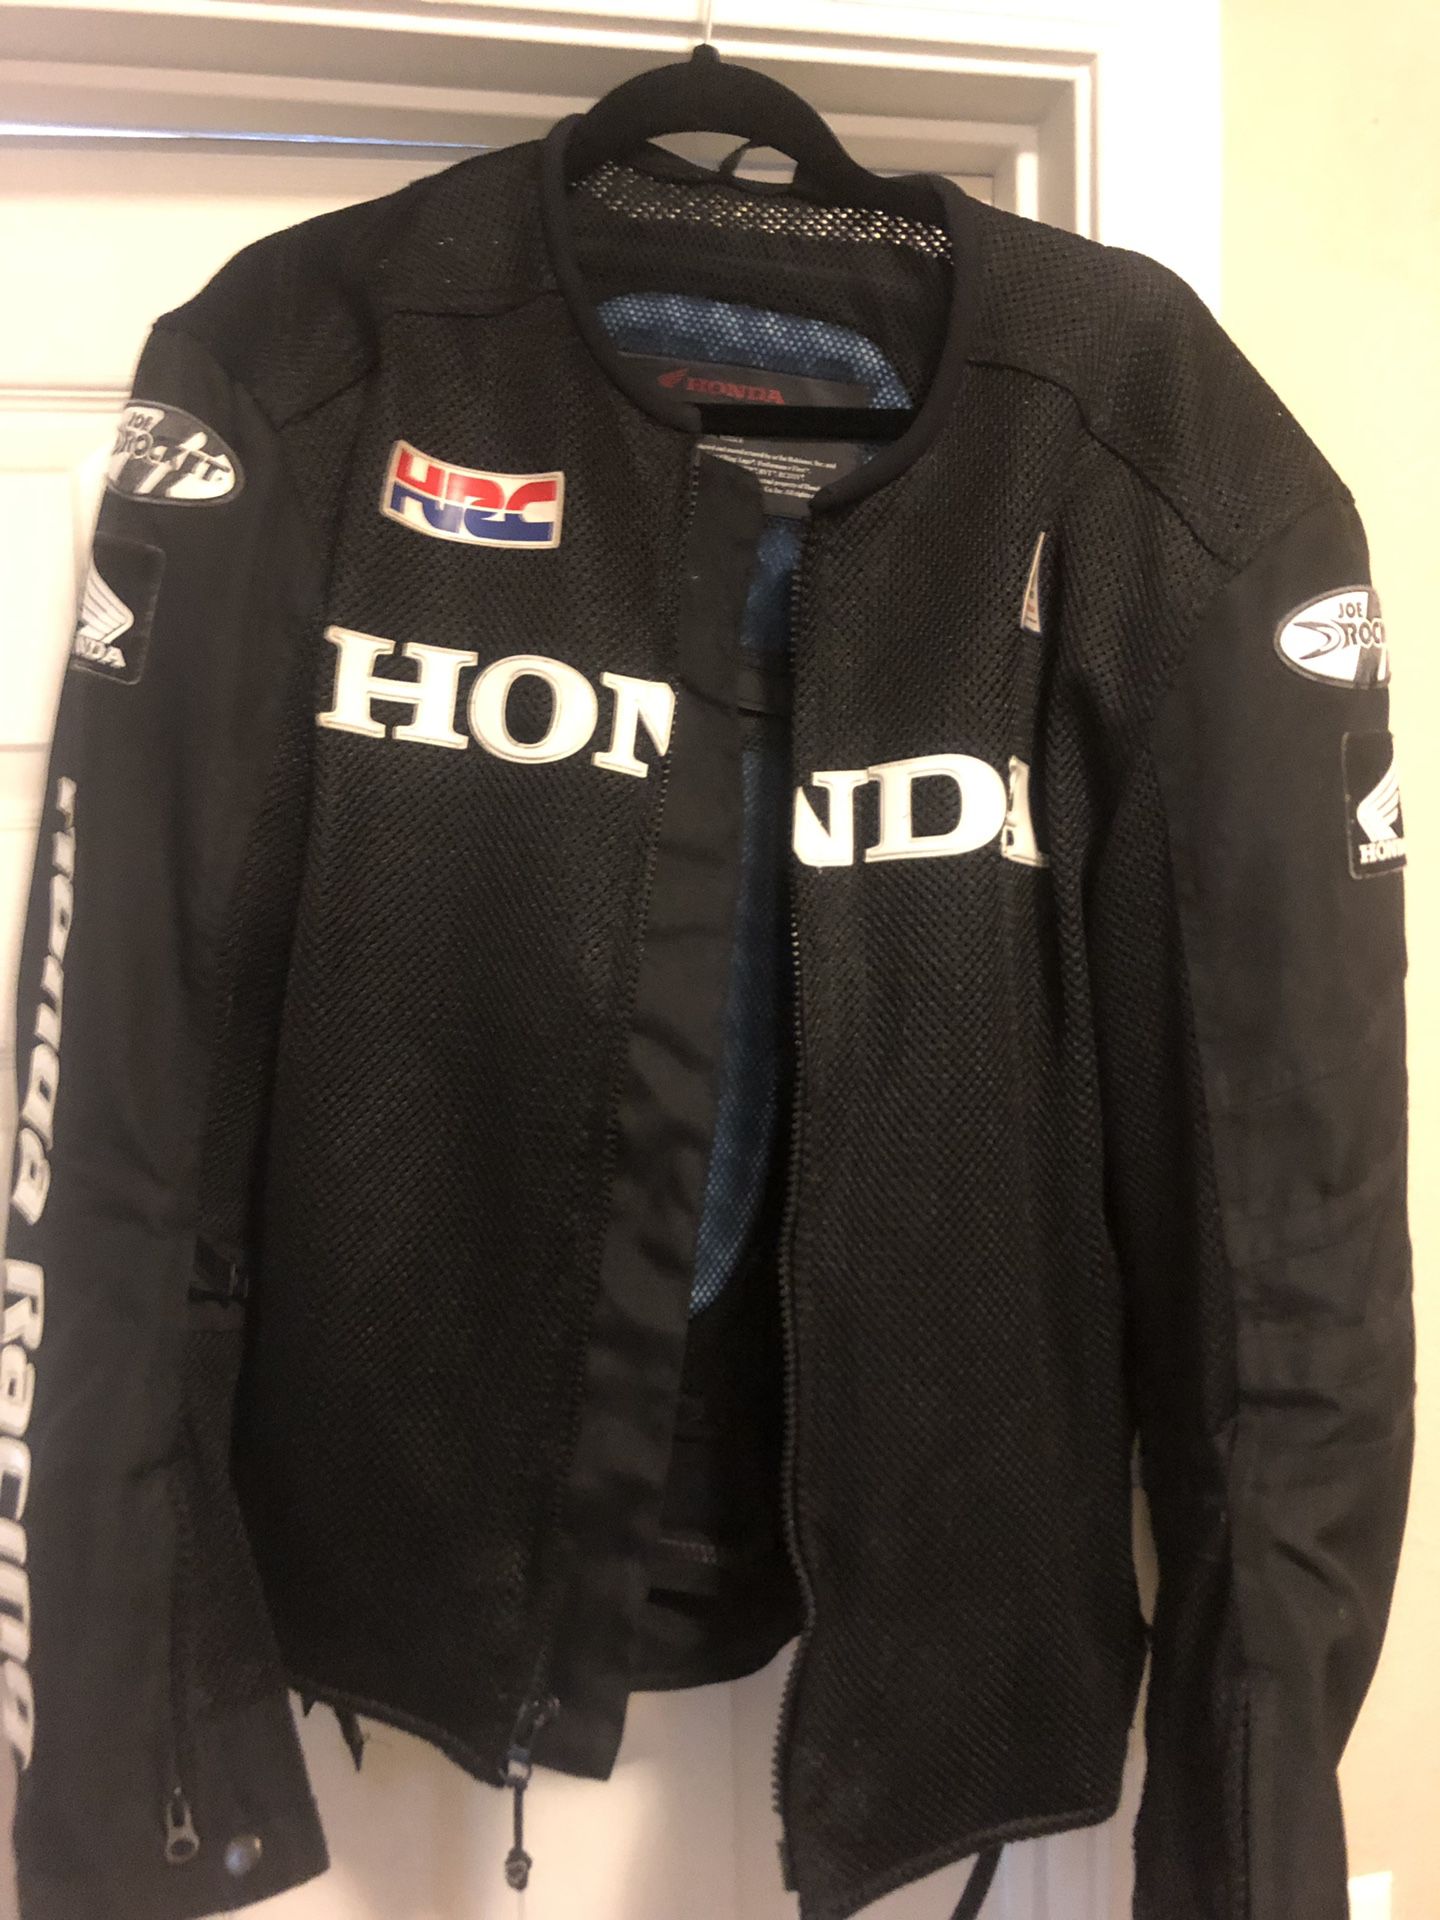 Official Honda licensed joe rocket motorcycle jacket.